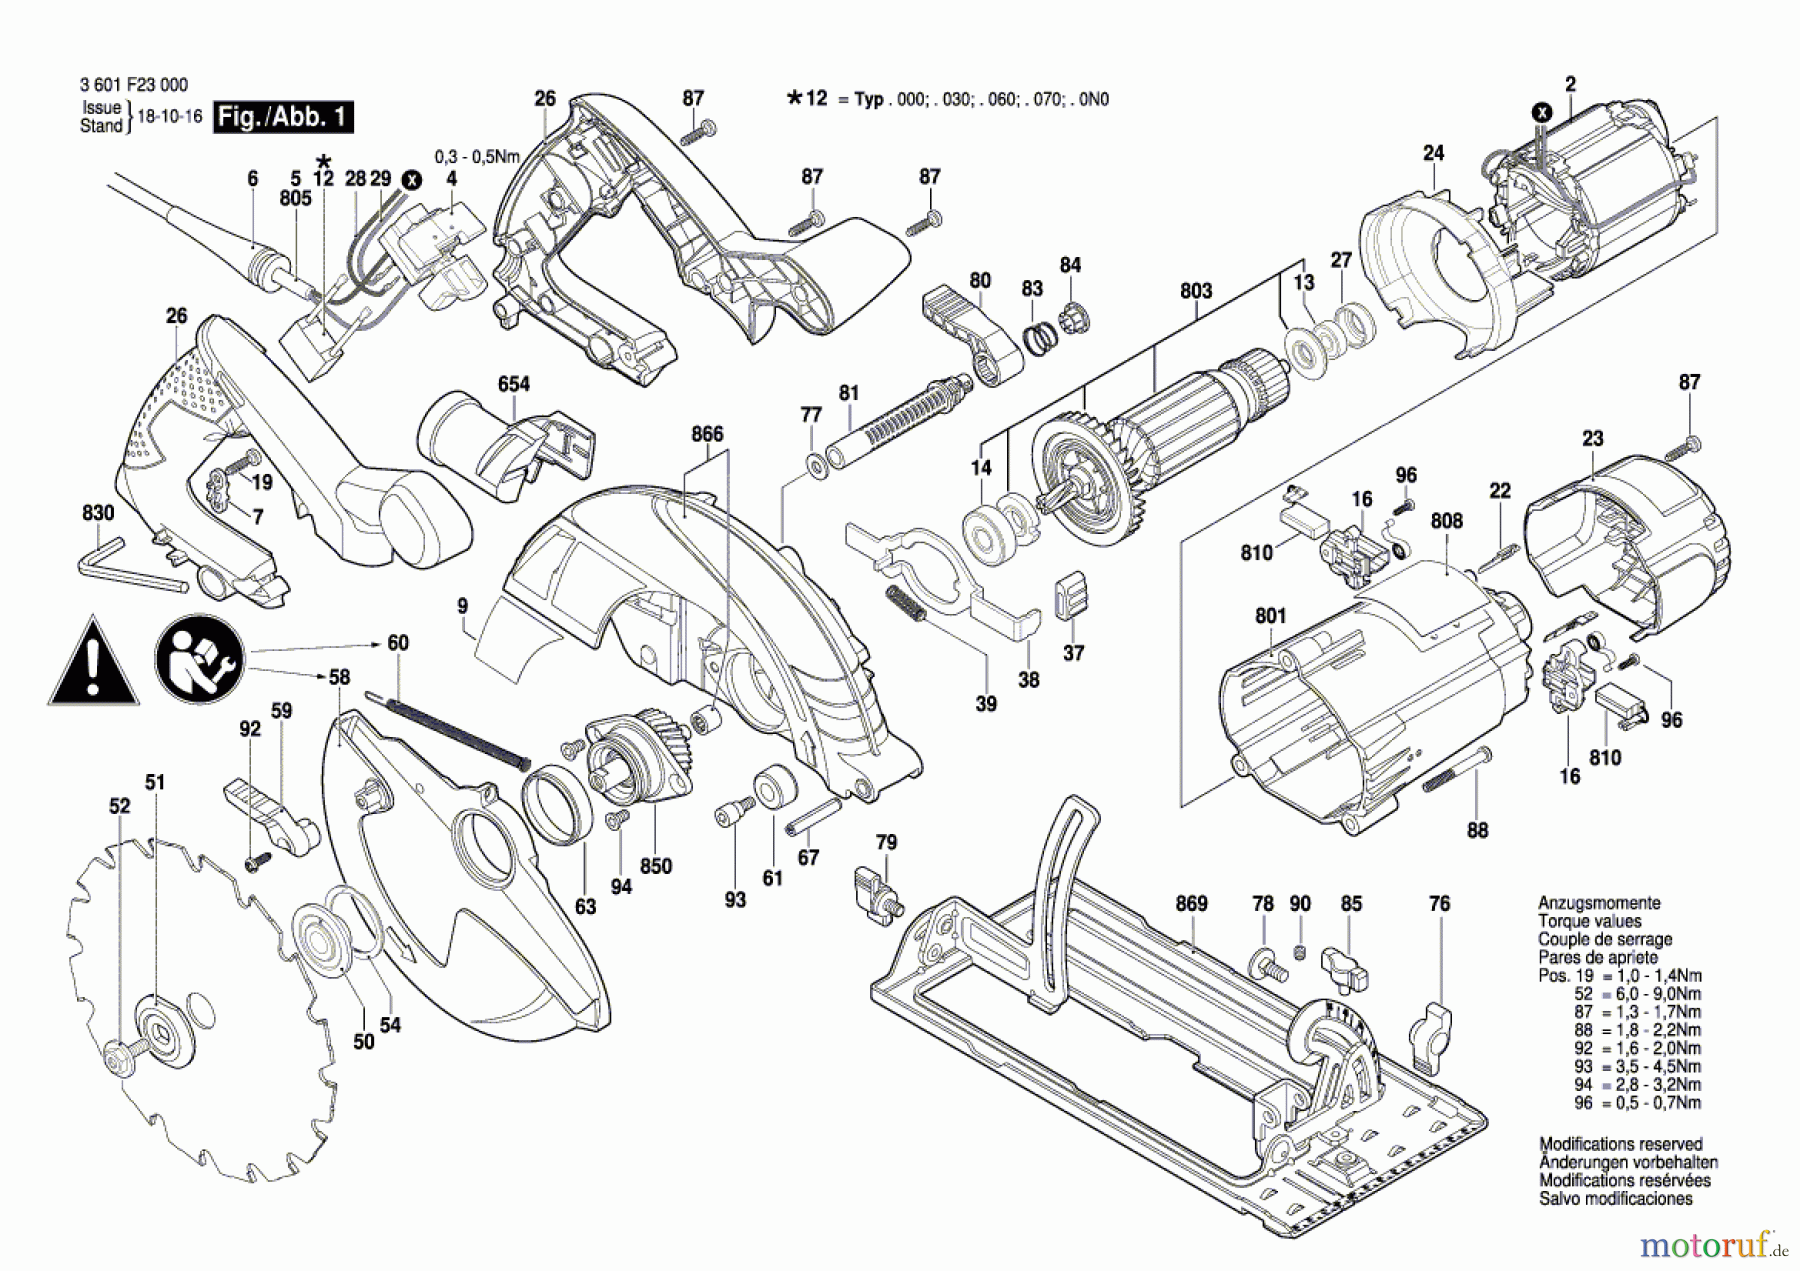  Bosch Werkzeug Handkreissäge GKS 190 Seite 1